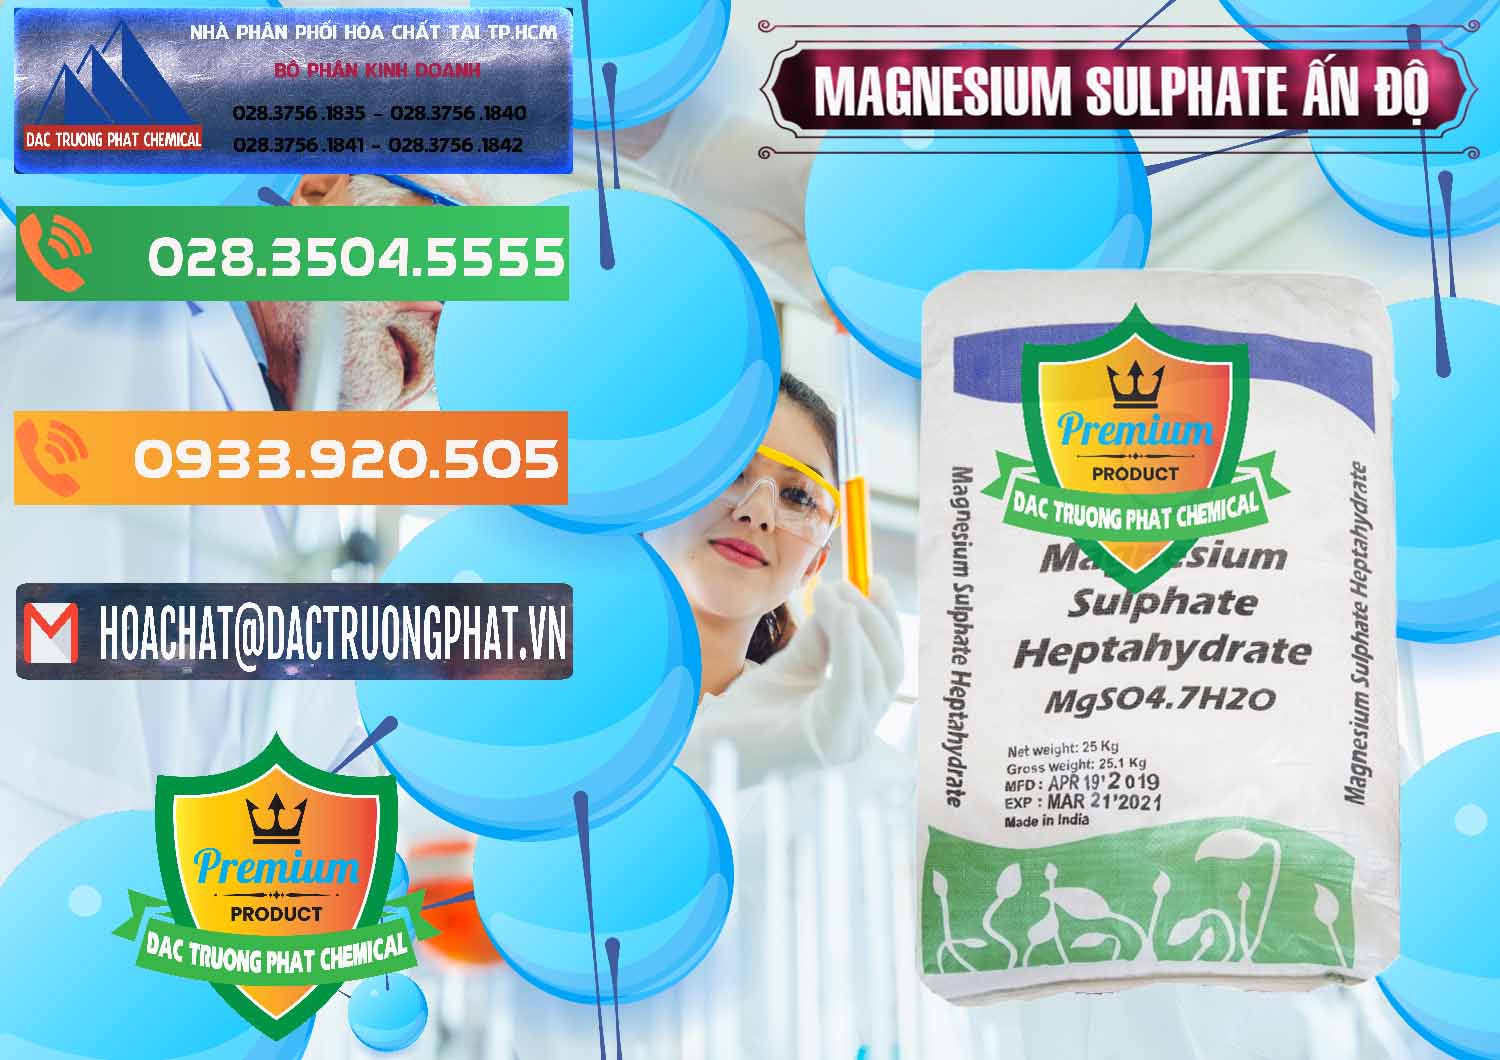 Công ty cung cấp và bán MGSO4.7H2O – Magnesium Sulphate Heptahydrate Ấn Độ India - 0362 - Nơi chuyên phân phối & nhập khẩu hóa chất tại TP.HCM - hoachatxulynuoc.com.vn